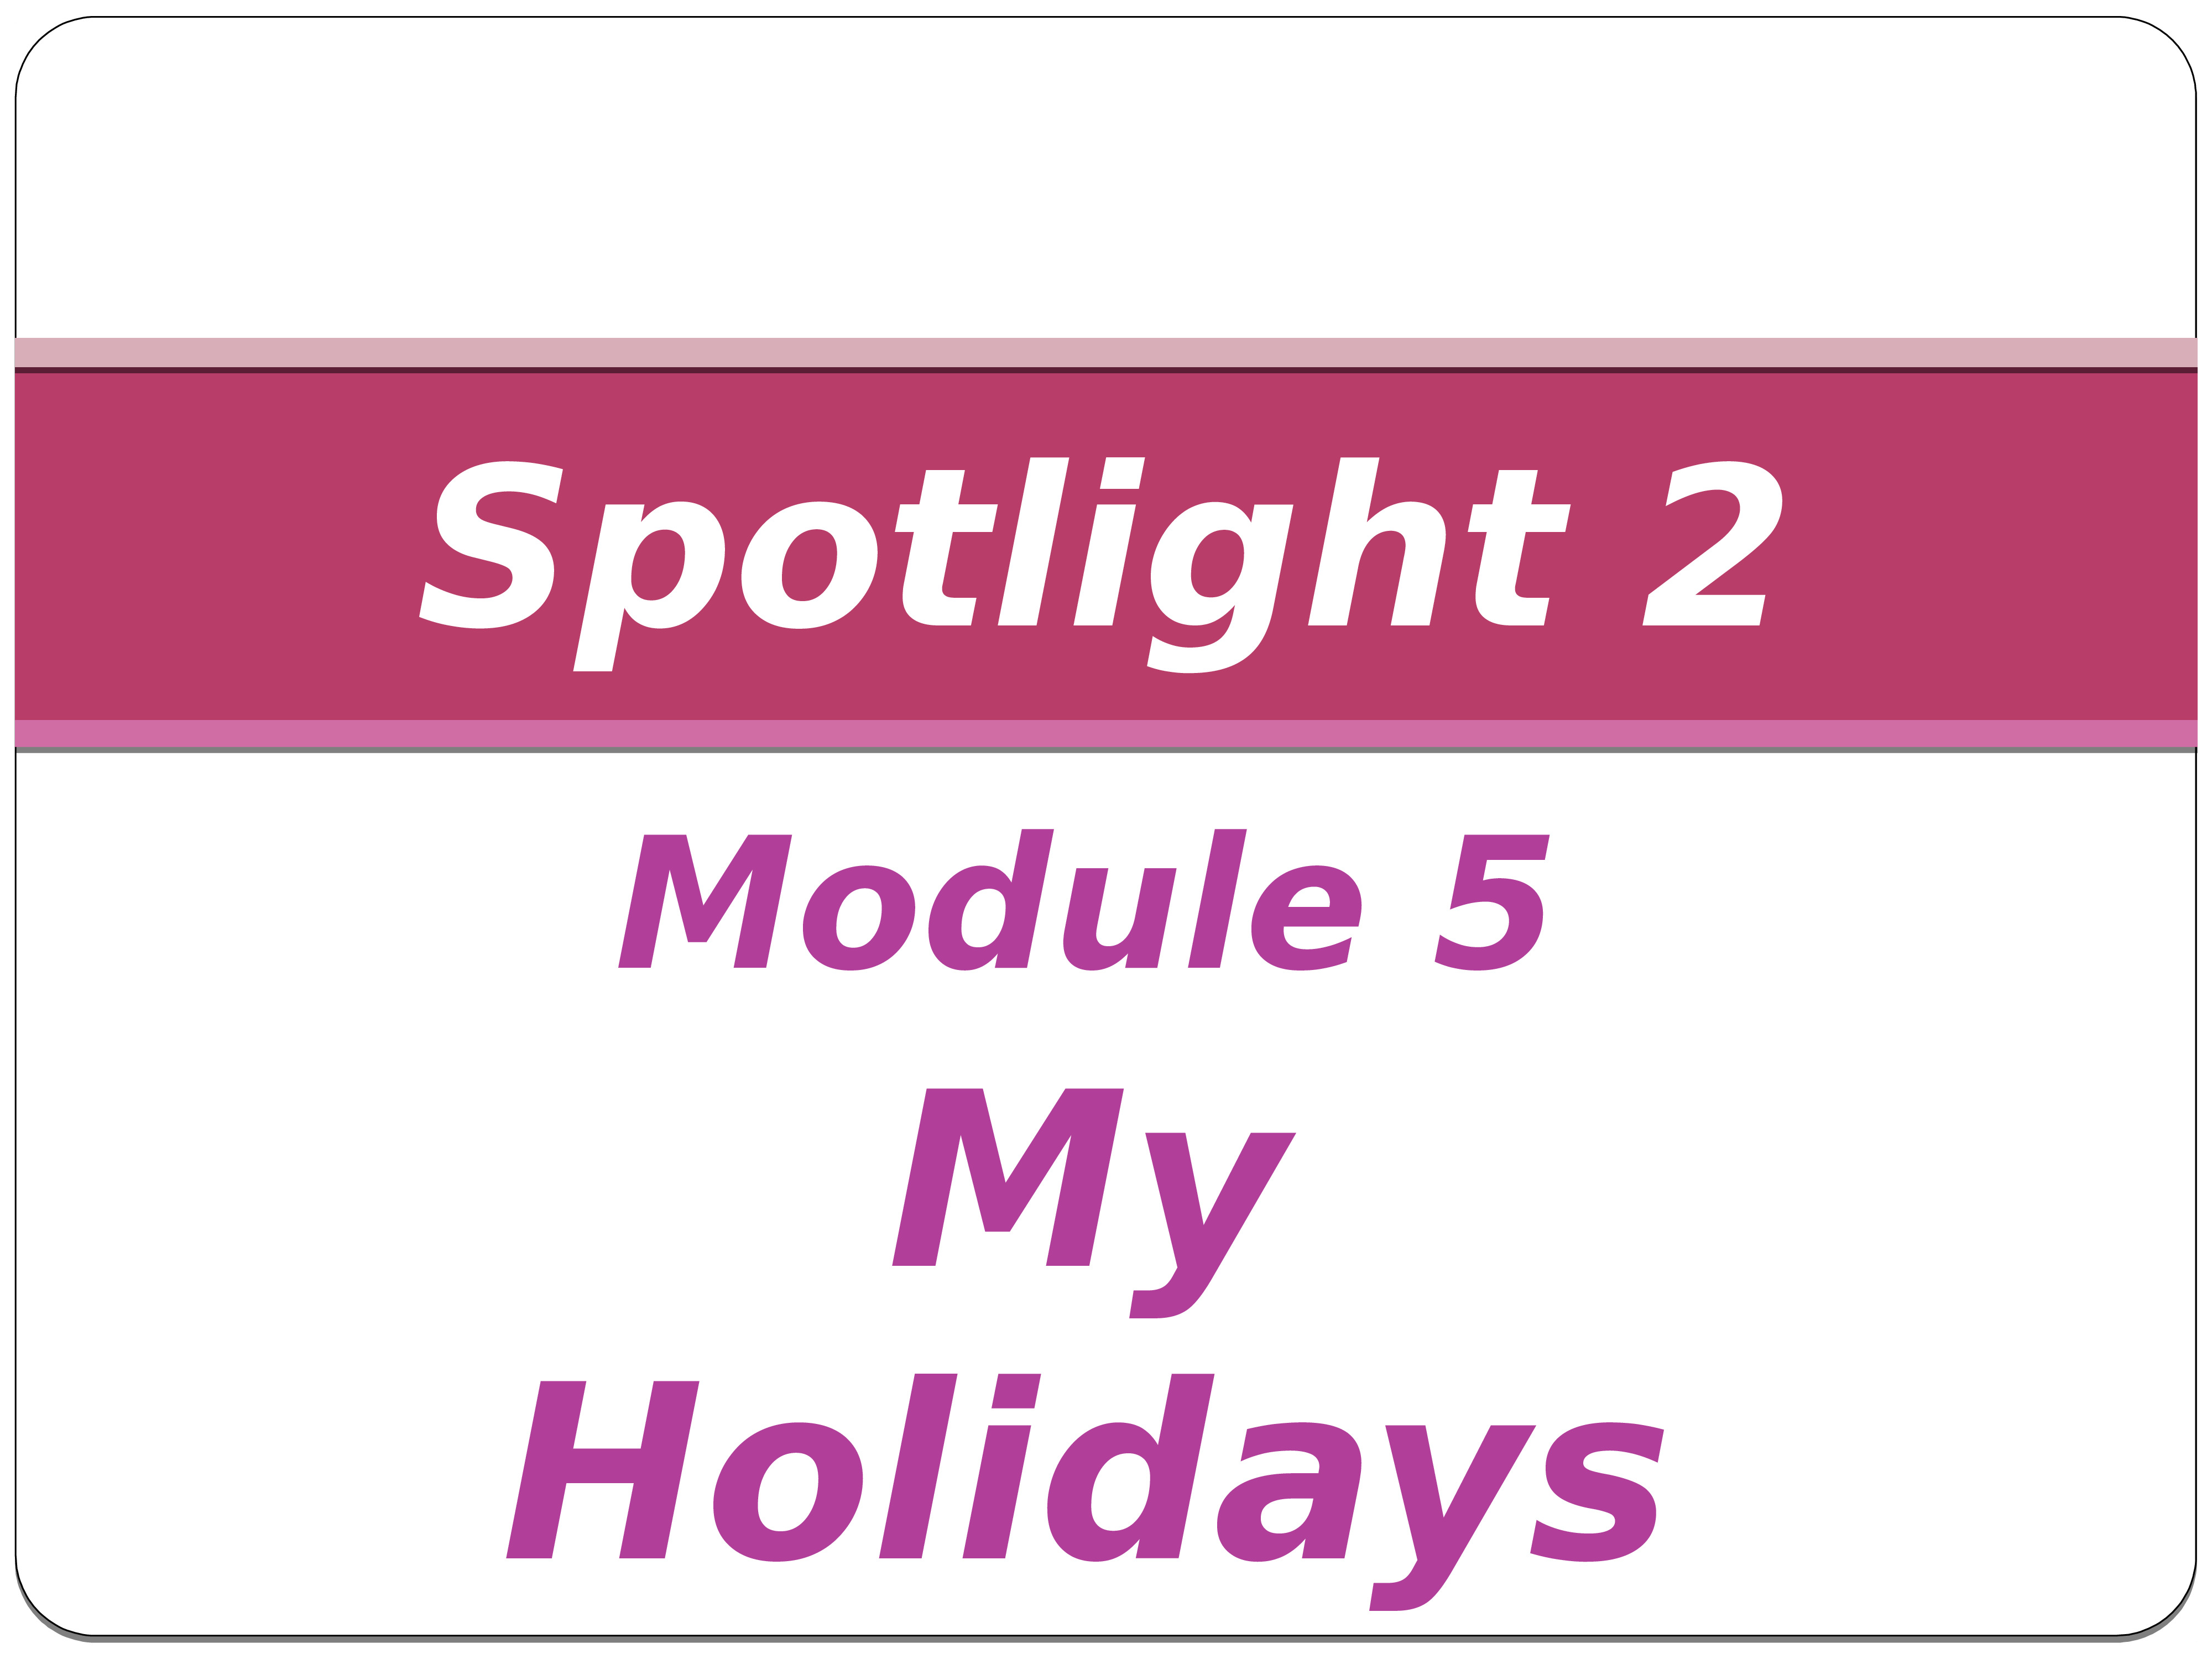 Spotlight 2 my Holidays. Спотлайт 2 класс my Holidays. Spotlight 2 Module 5 my Holidays картинки.